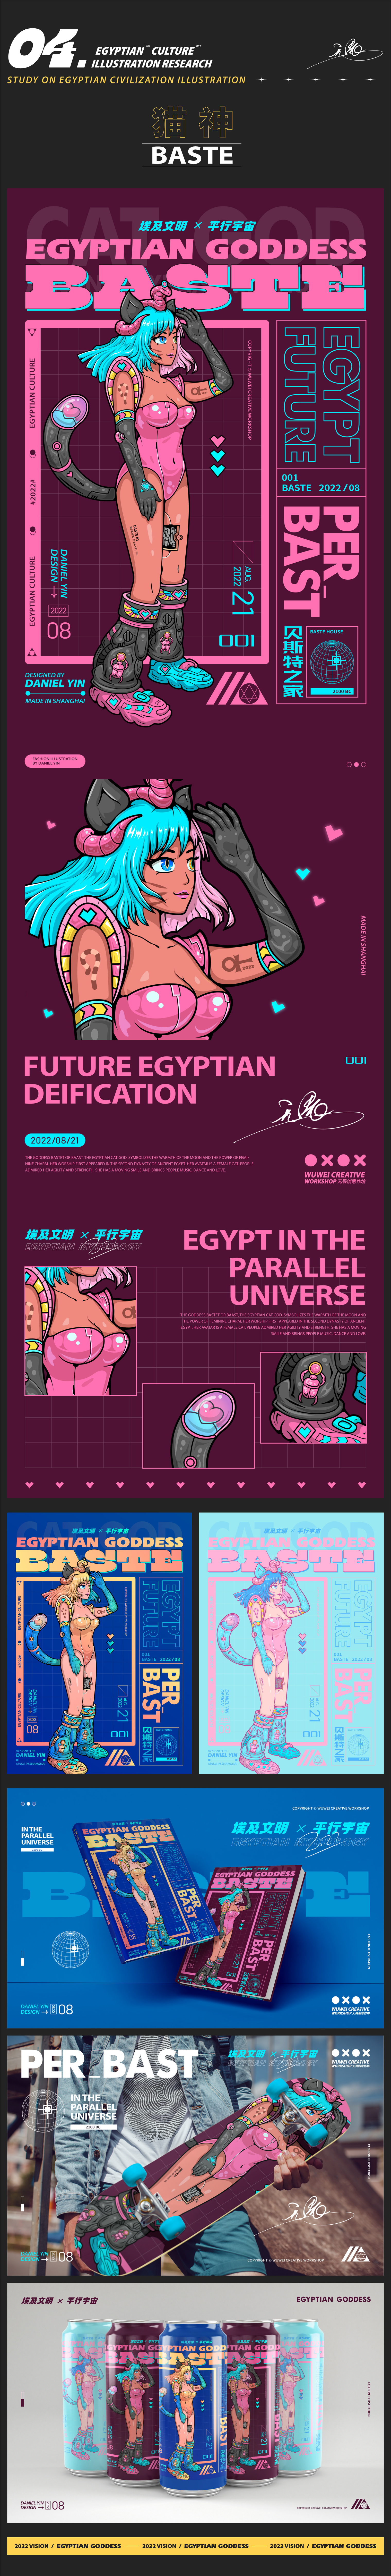 埃及神话X平行宇宙 潮流插画